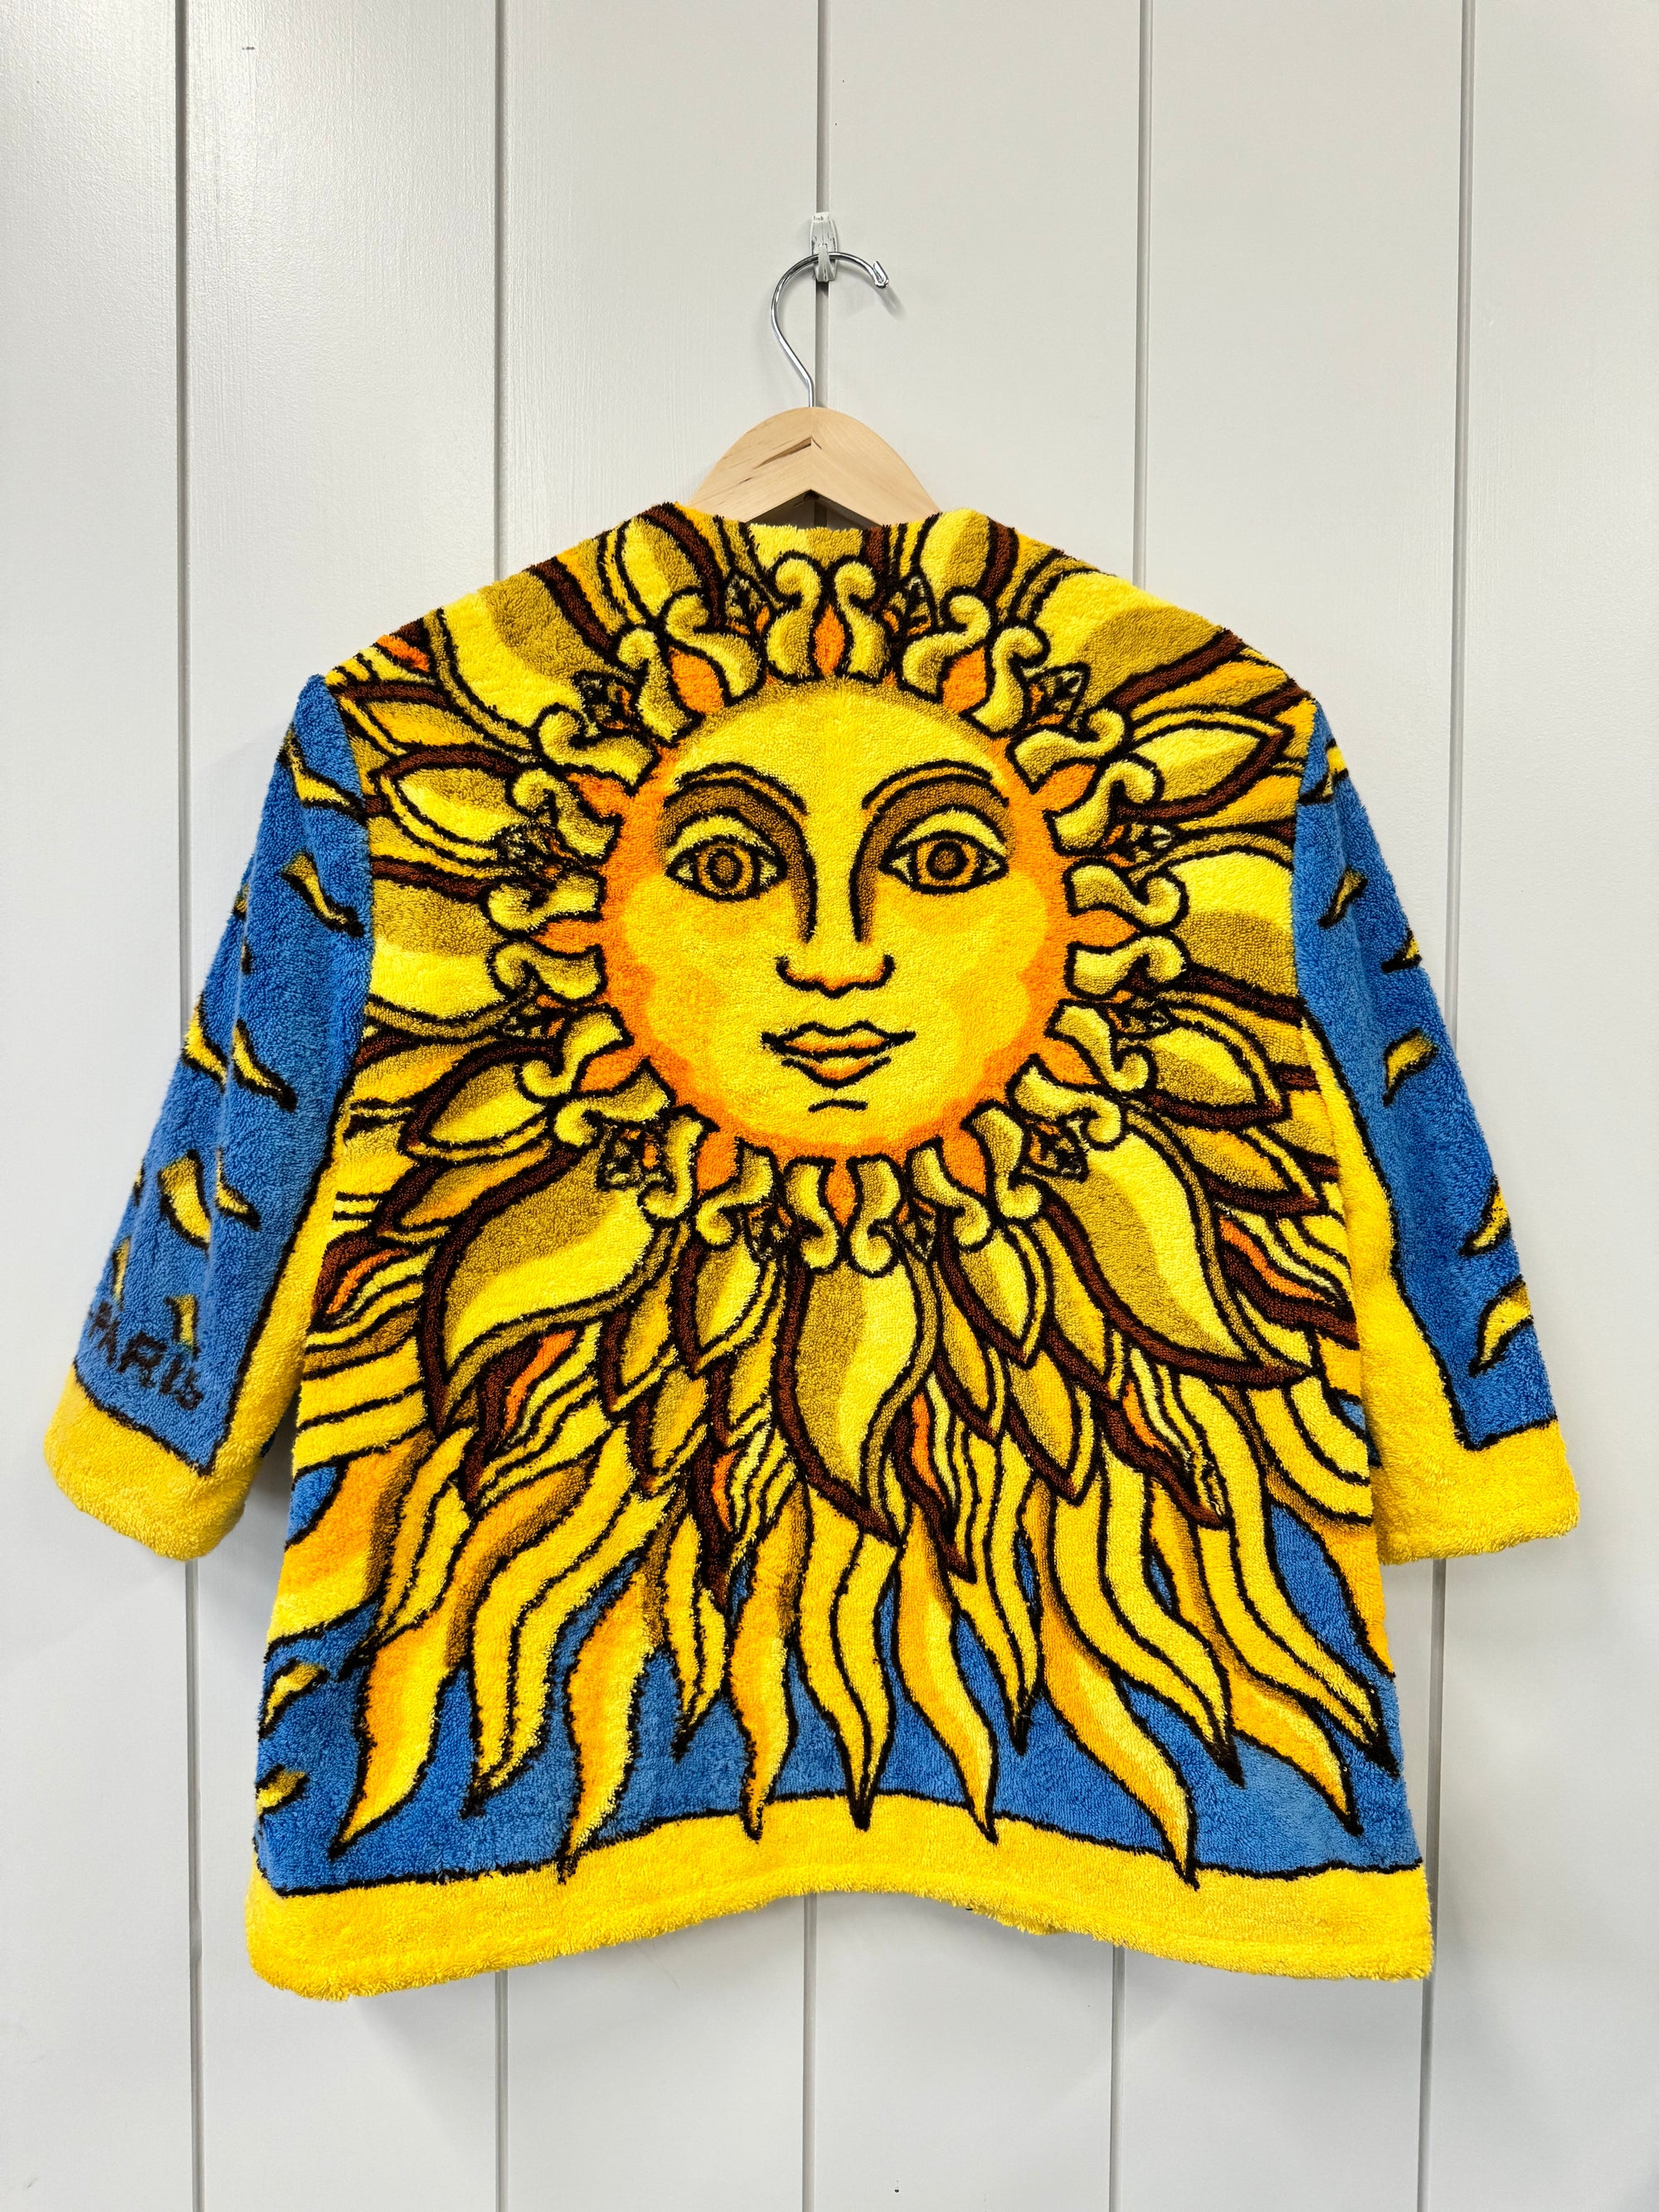 The Sun Jacket